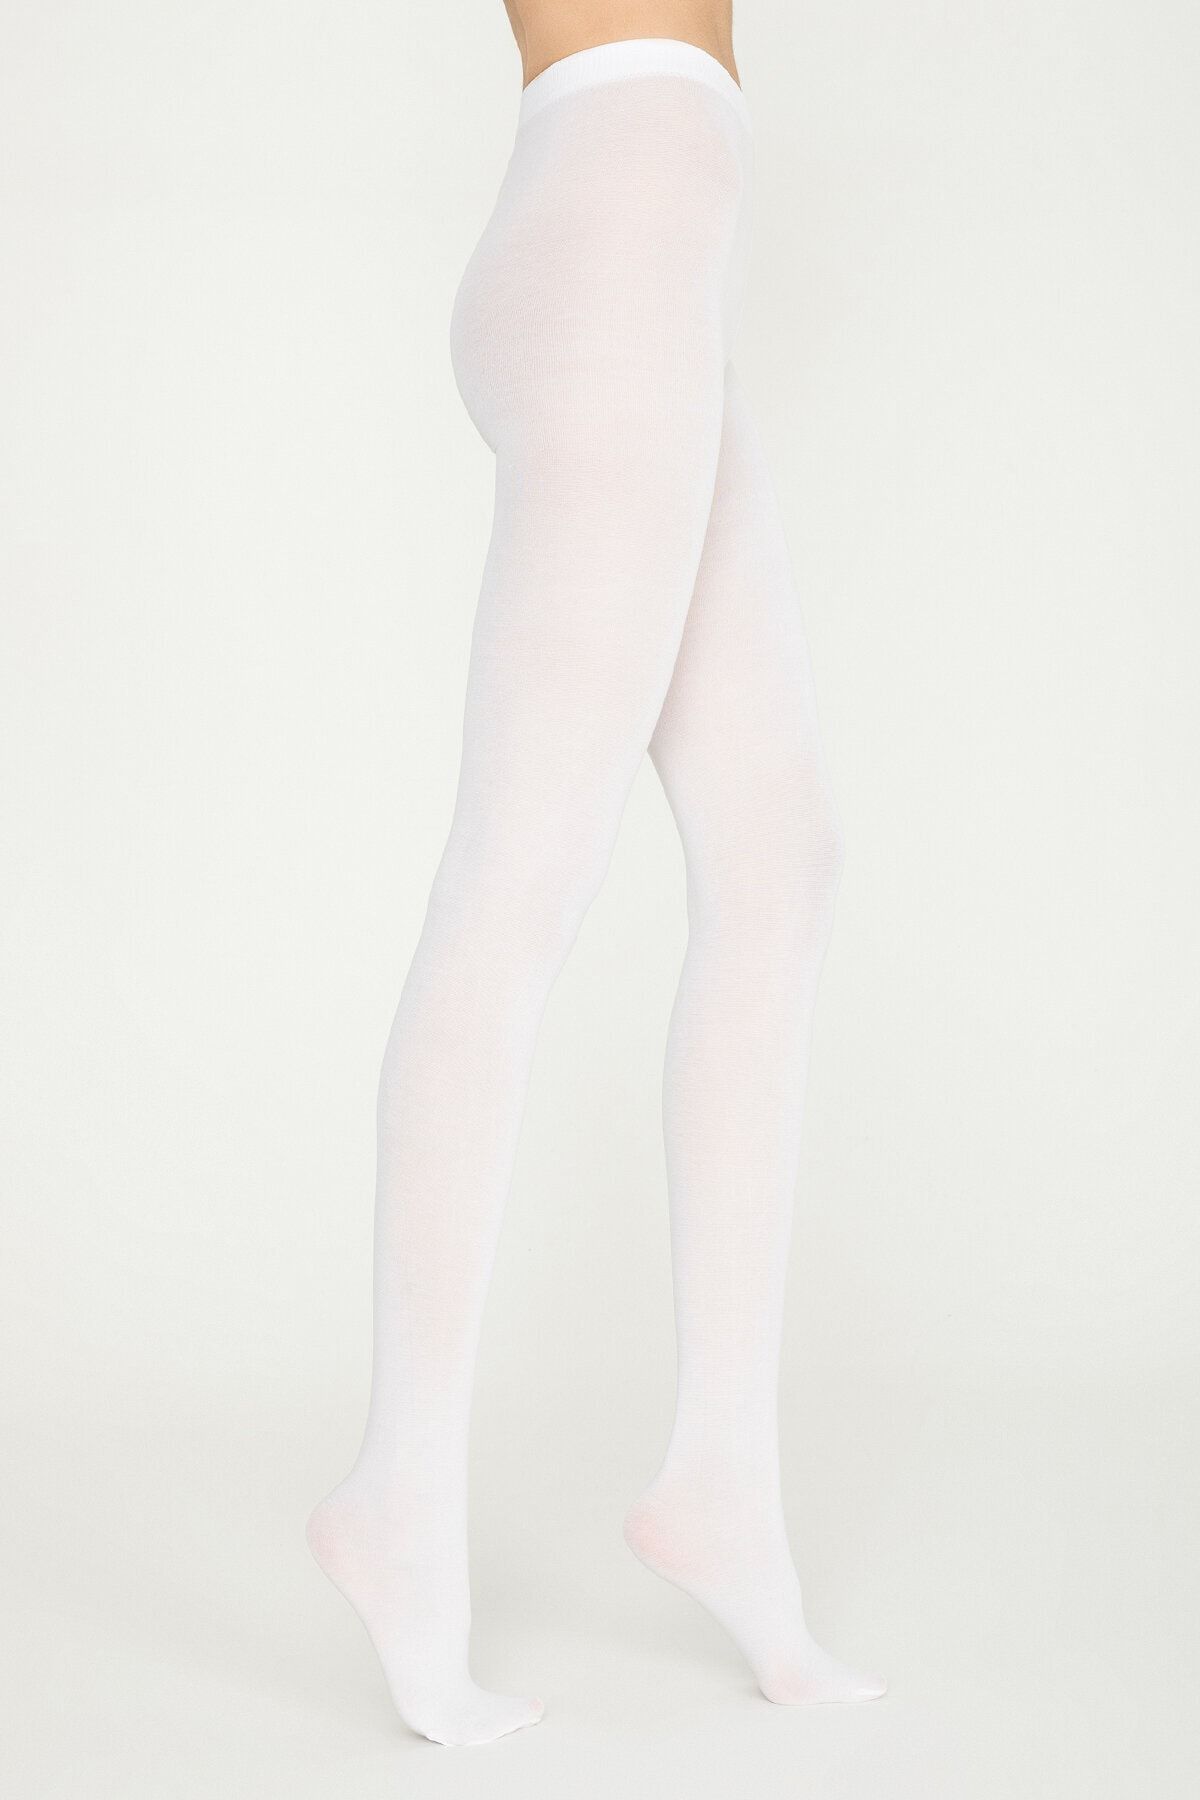 Penti Kadın Beyaz Koton 60 Den Kalın Mat Külotlu Çorap